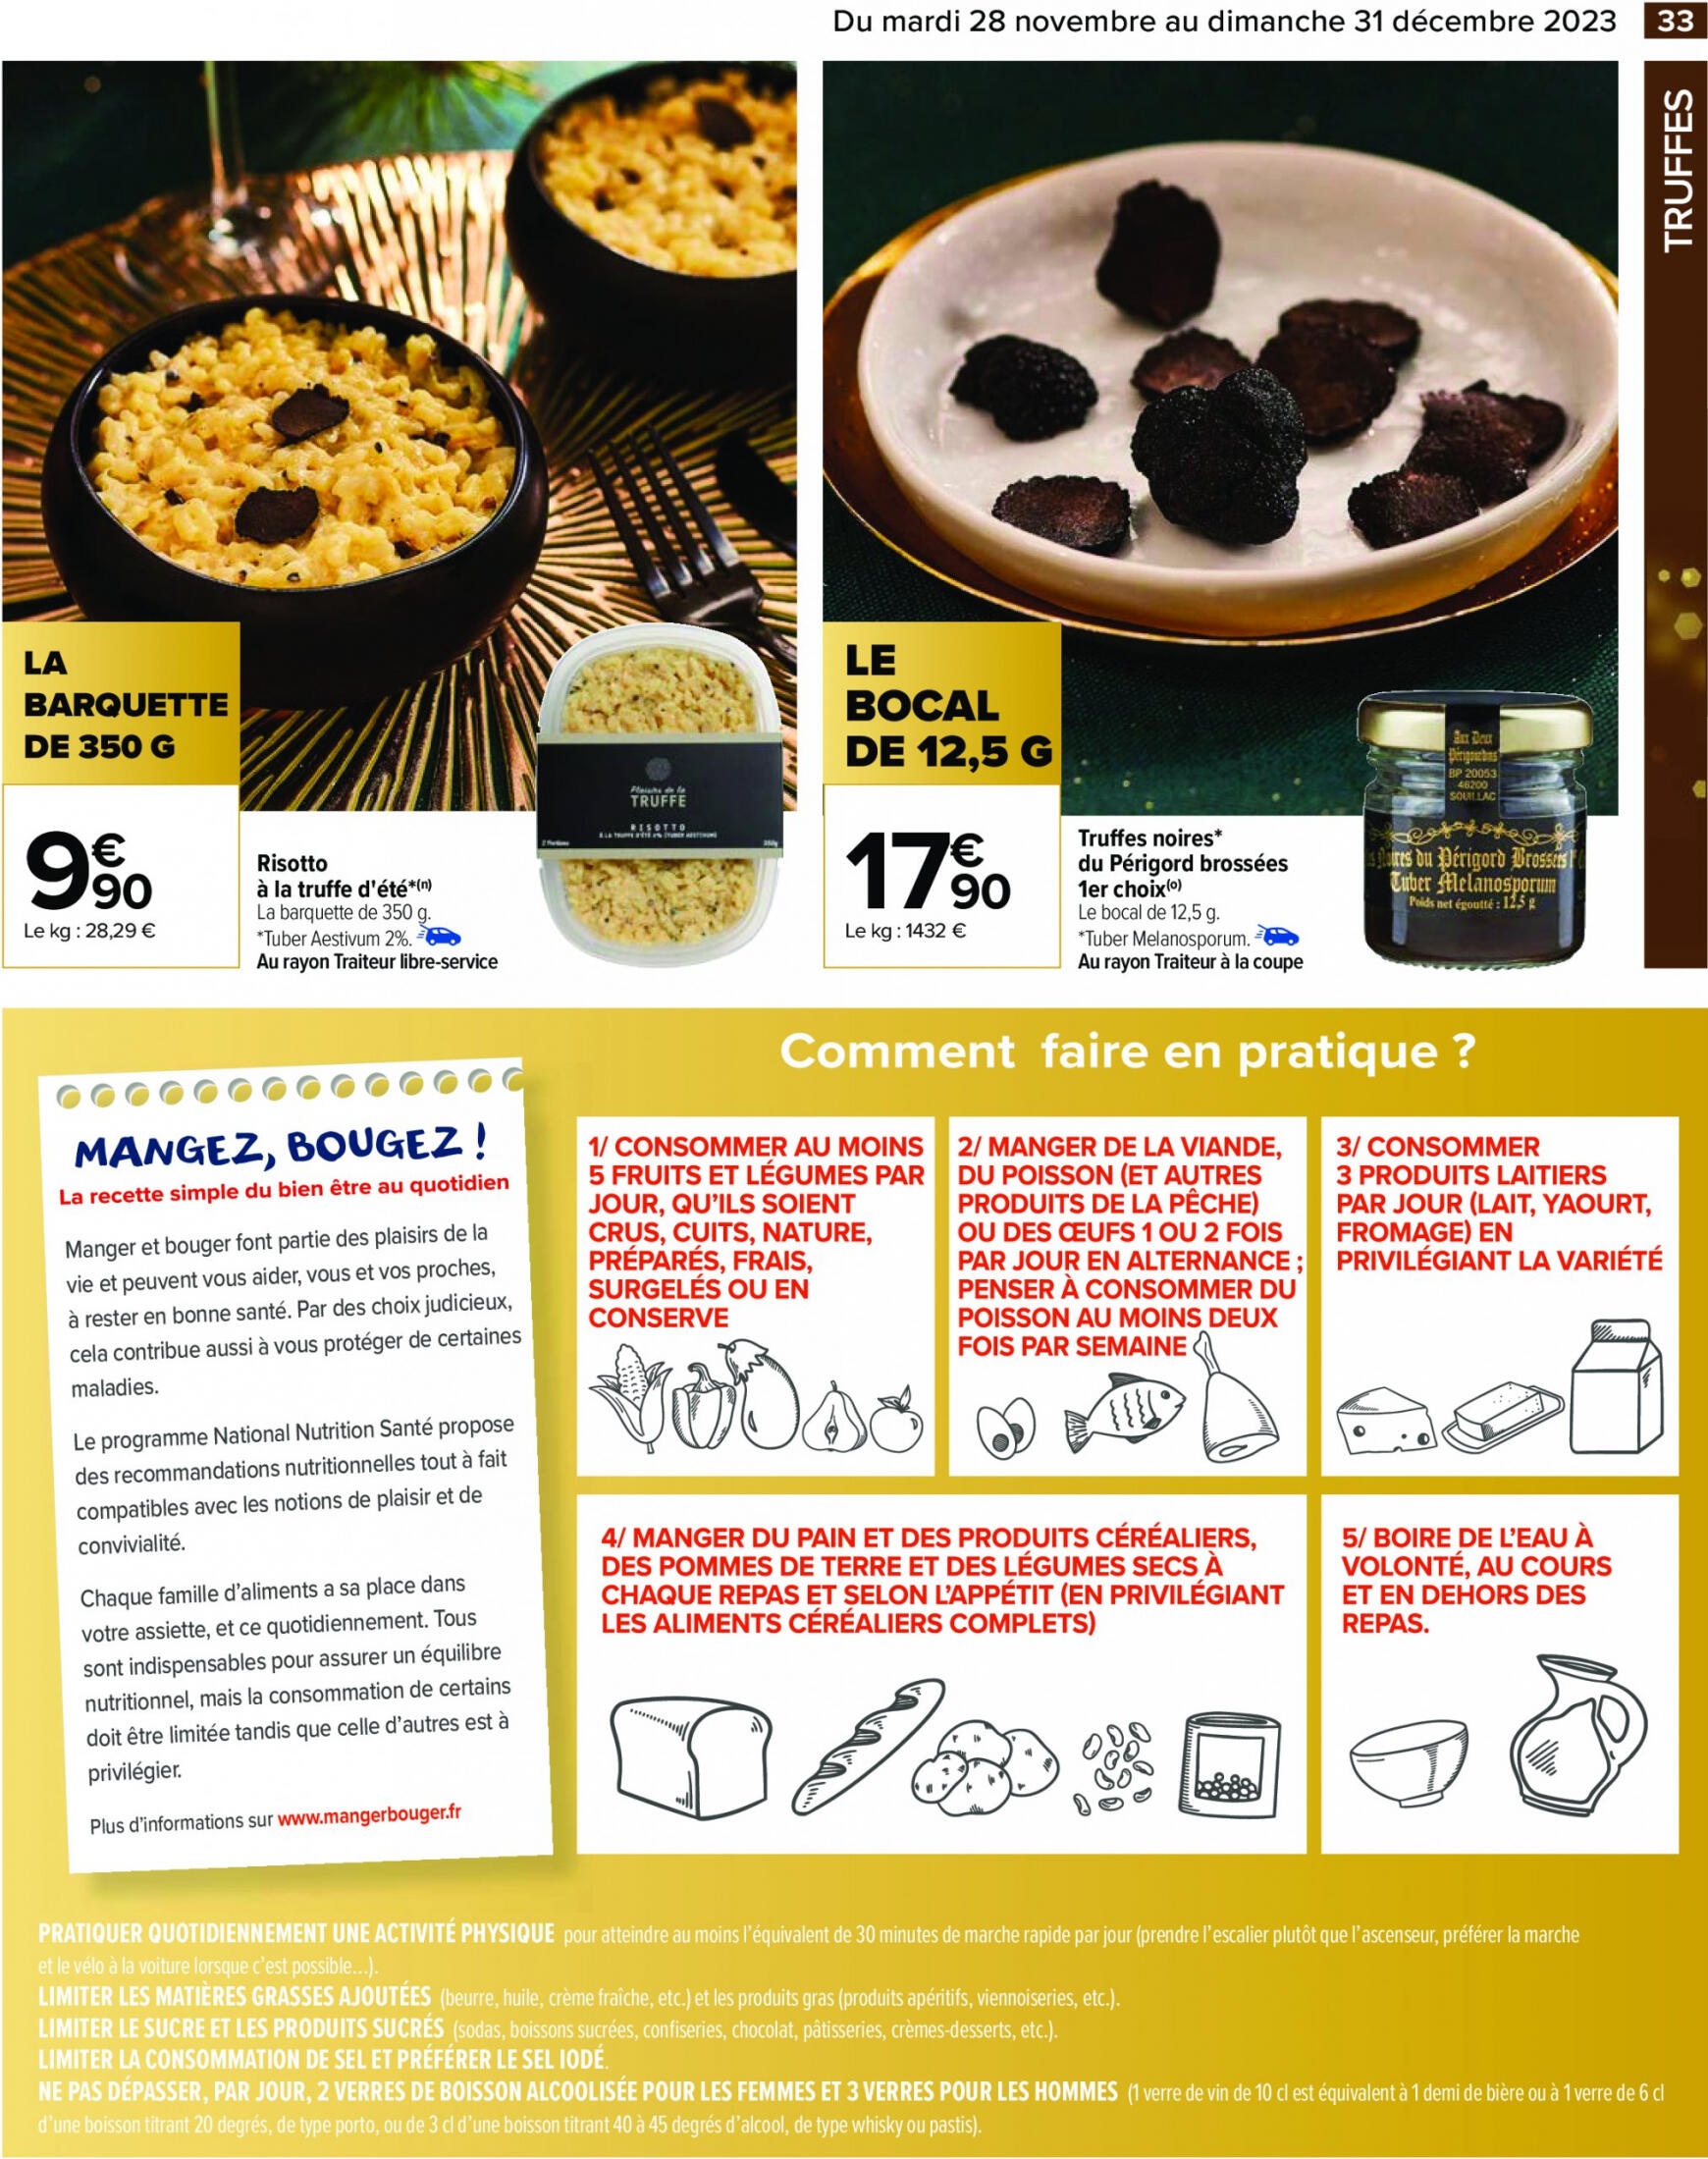 carrefour - Carrefour - Un Noël extra à prix ordinaire - GUIDE CULINAIRE valable à partir de 28.11.2023 - page: 35